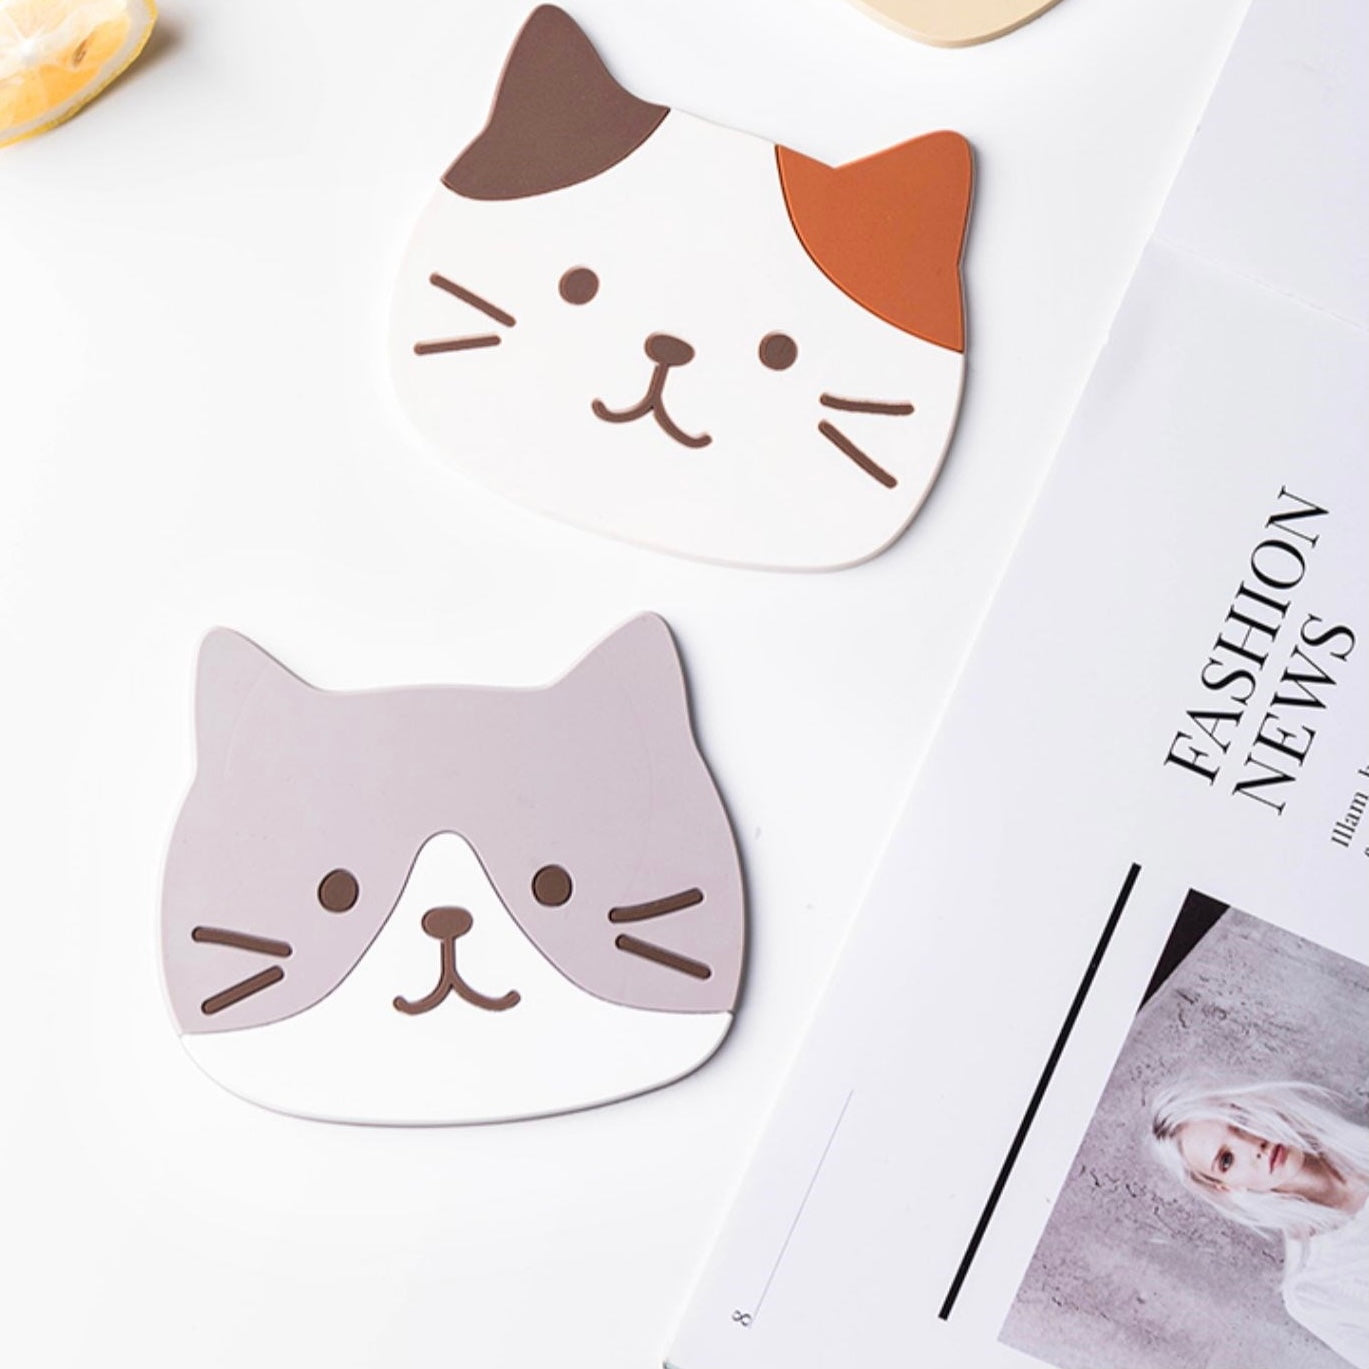 Cute Cat Shape Waterproof Anti-Slip Cup Coaster - Peachymart